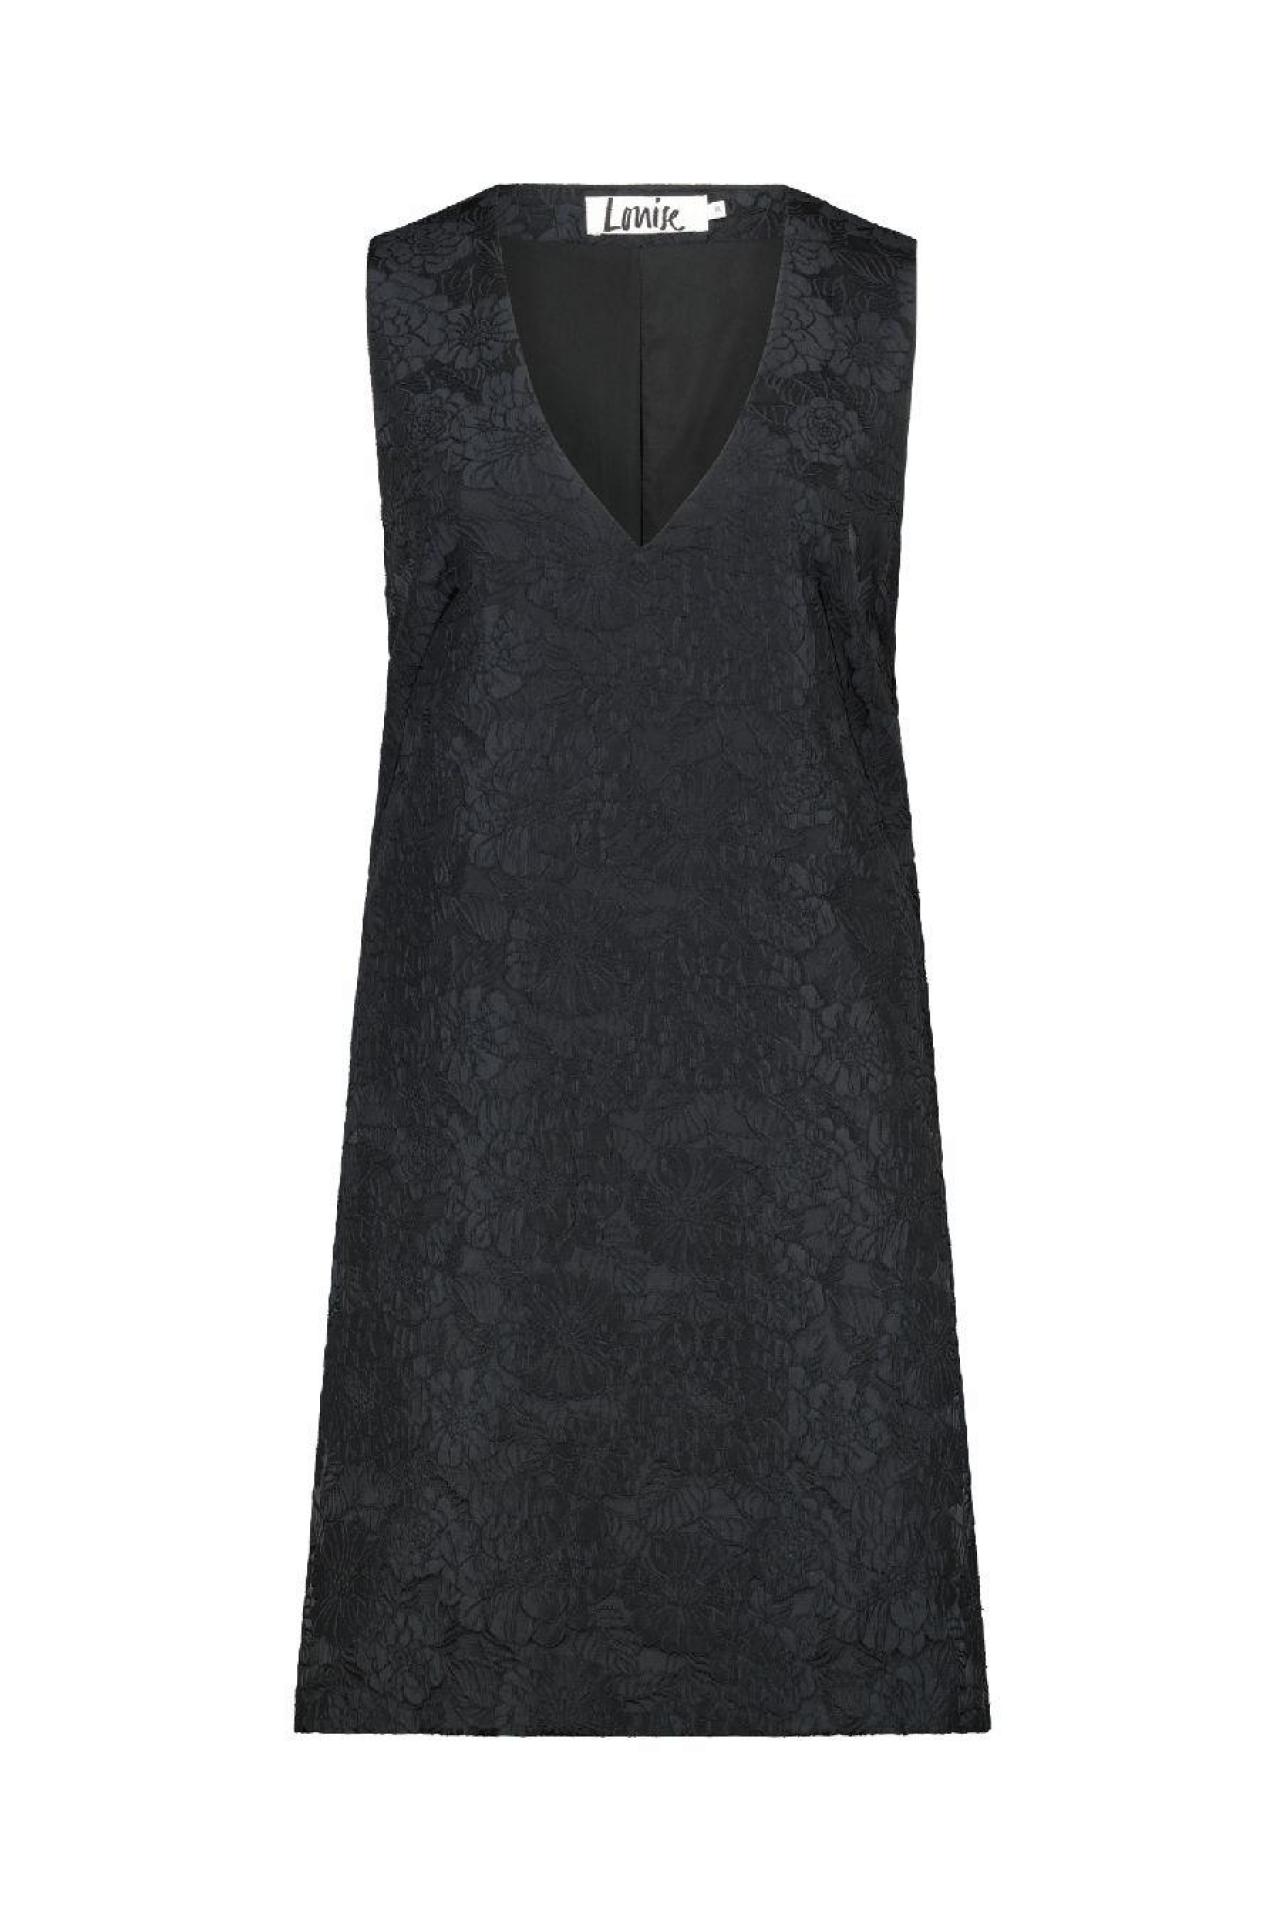 Mouwloze jurk (69,99 euro), uit de Louise-collectie van e5.